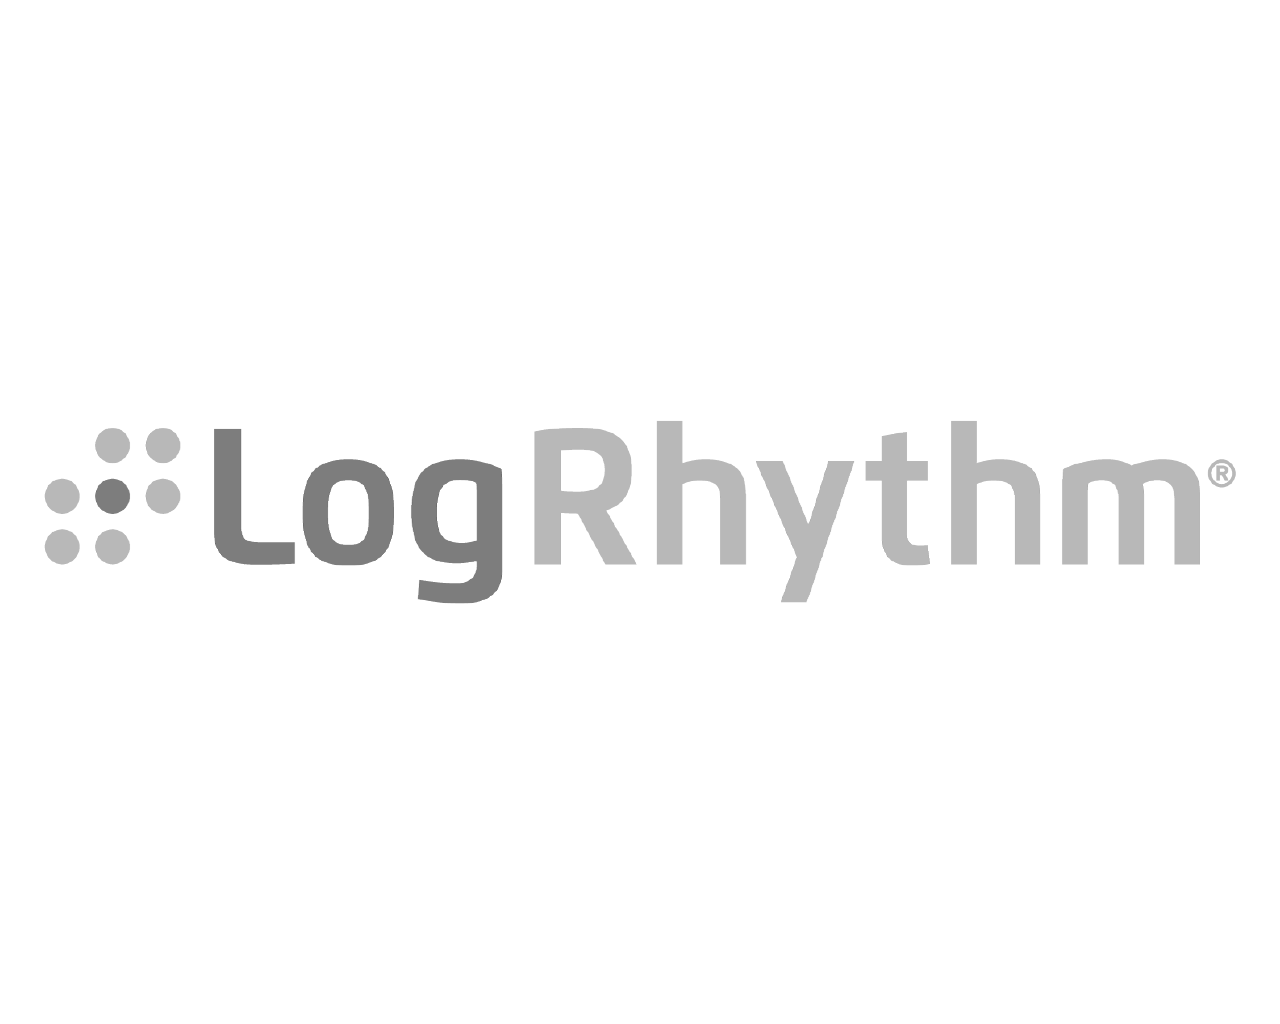 Logrhythm Logo